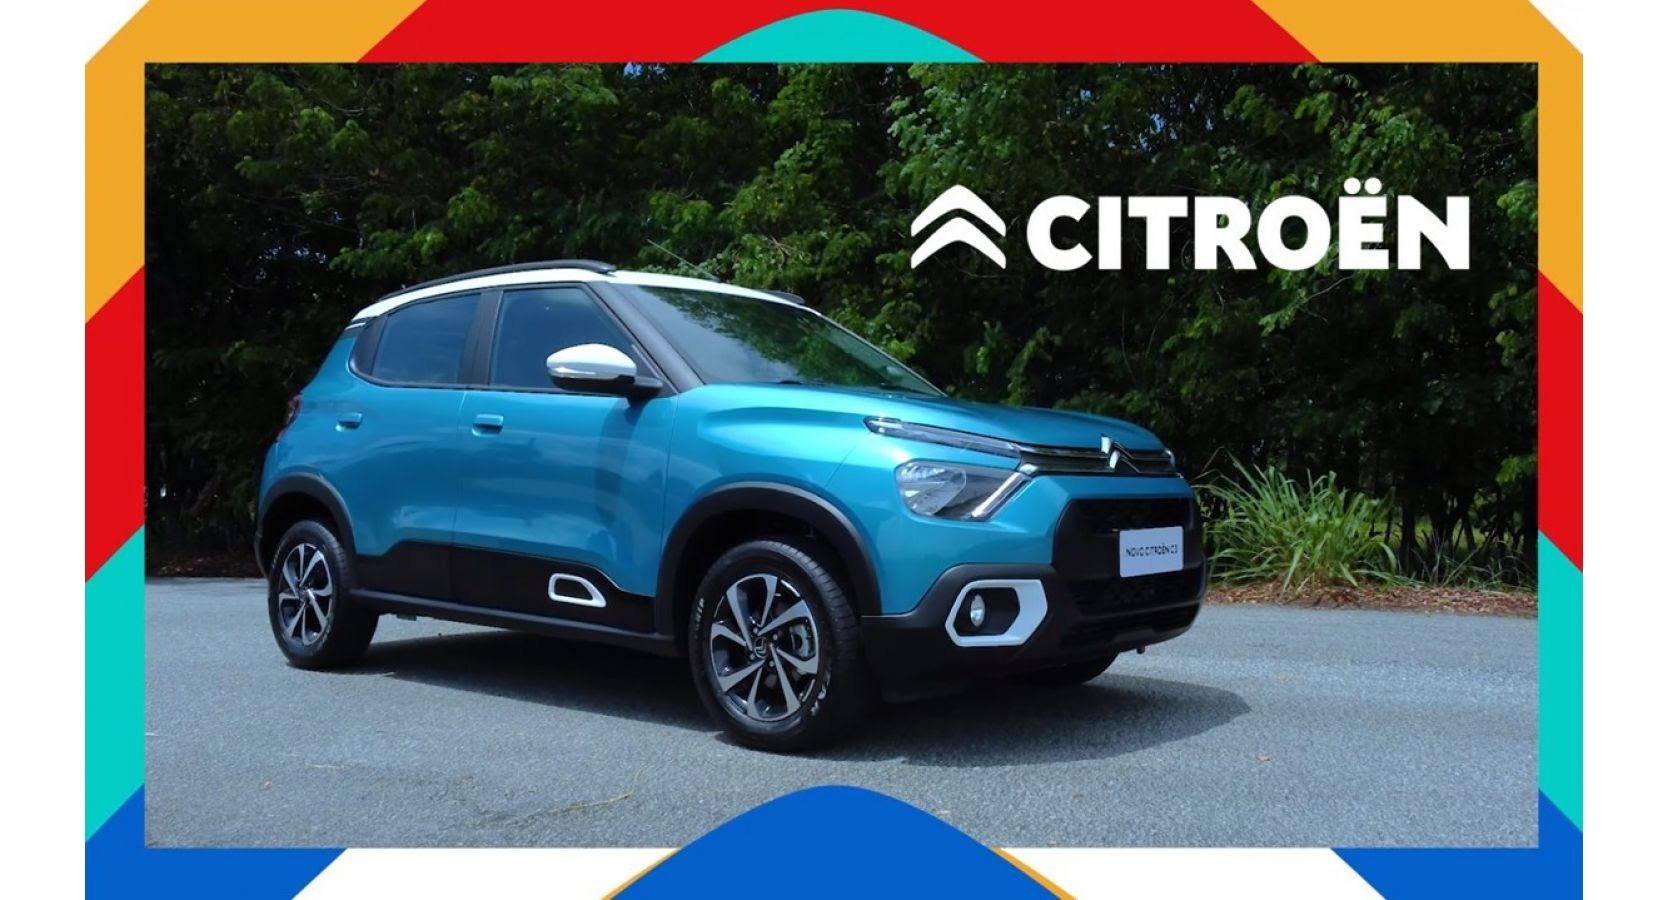 Webserie: El tercer episodio continúa descubriendo al nuevo Citroën C3 antes de su lanzamiento